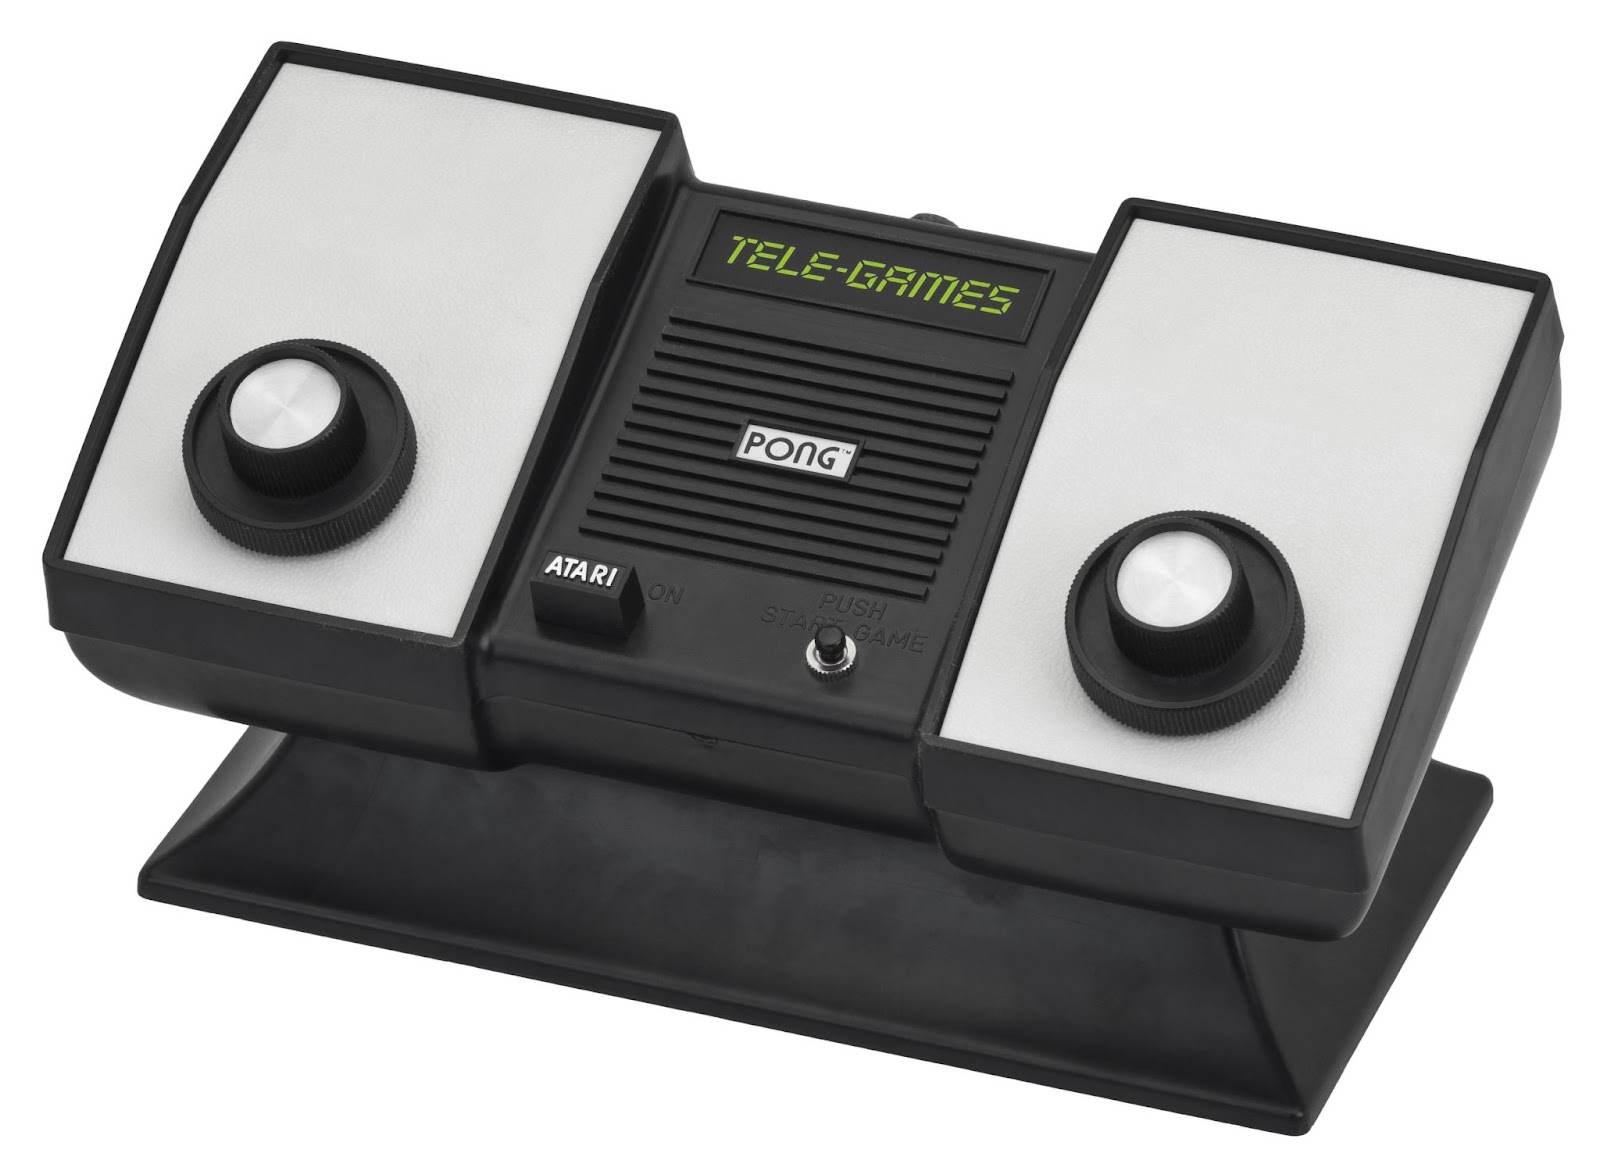 Контроллеры Pong предлагали лишь один элемент управления — поворотную ручку